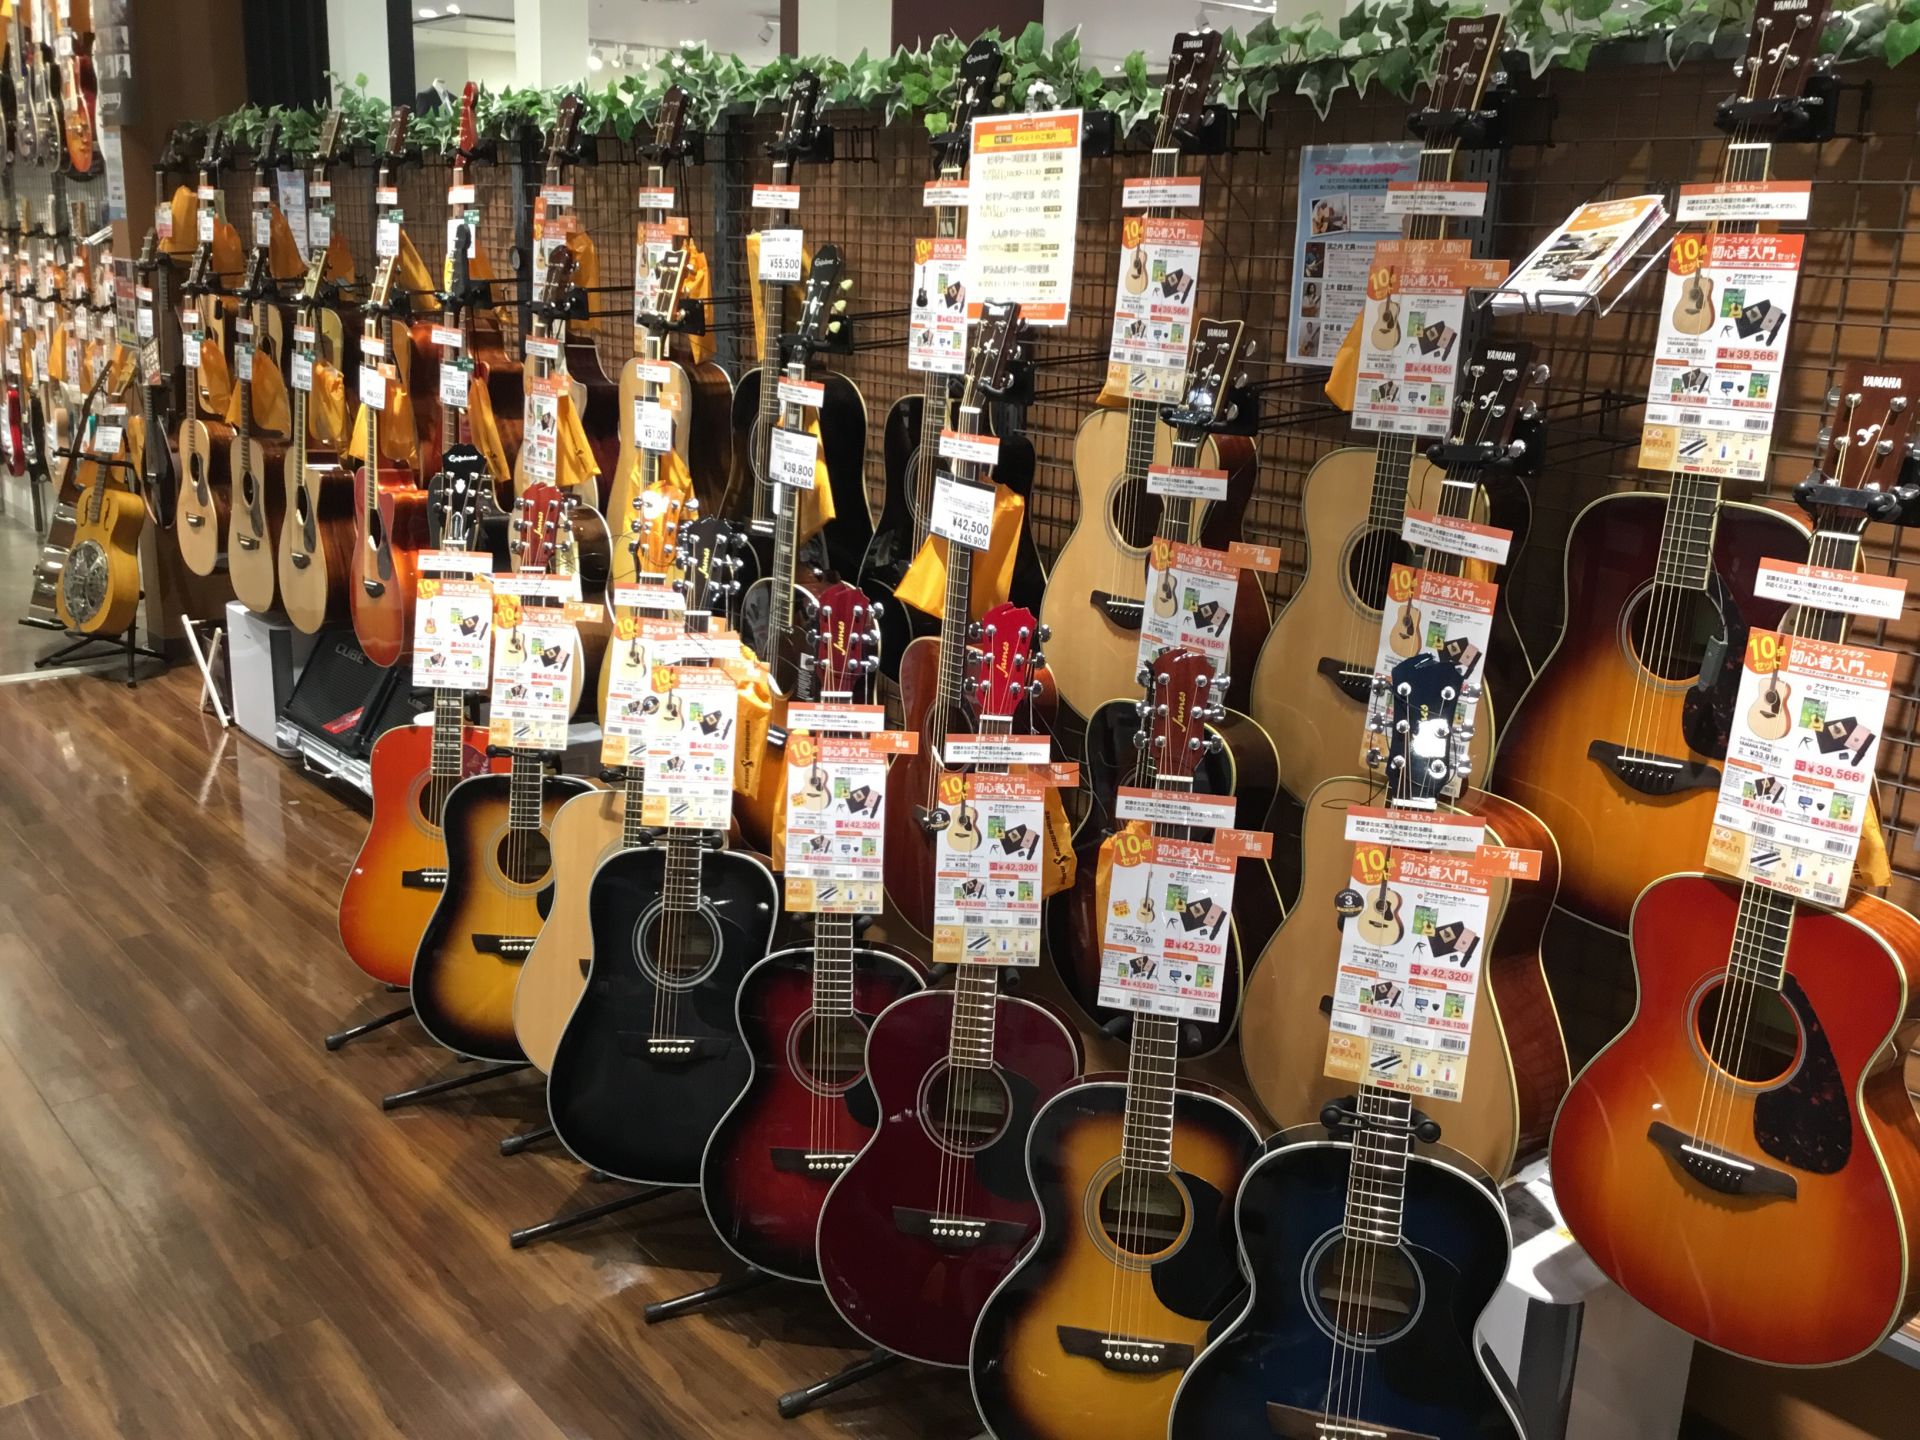 アコースティックギター 初心者セットでギターを始めよう イオンモール春日部店 店舗情報 島村楽器